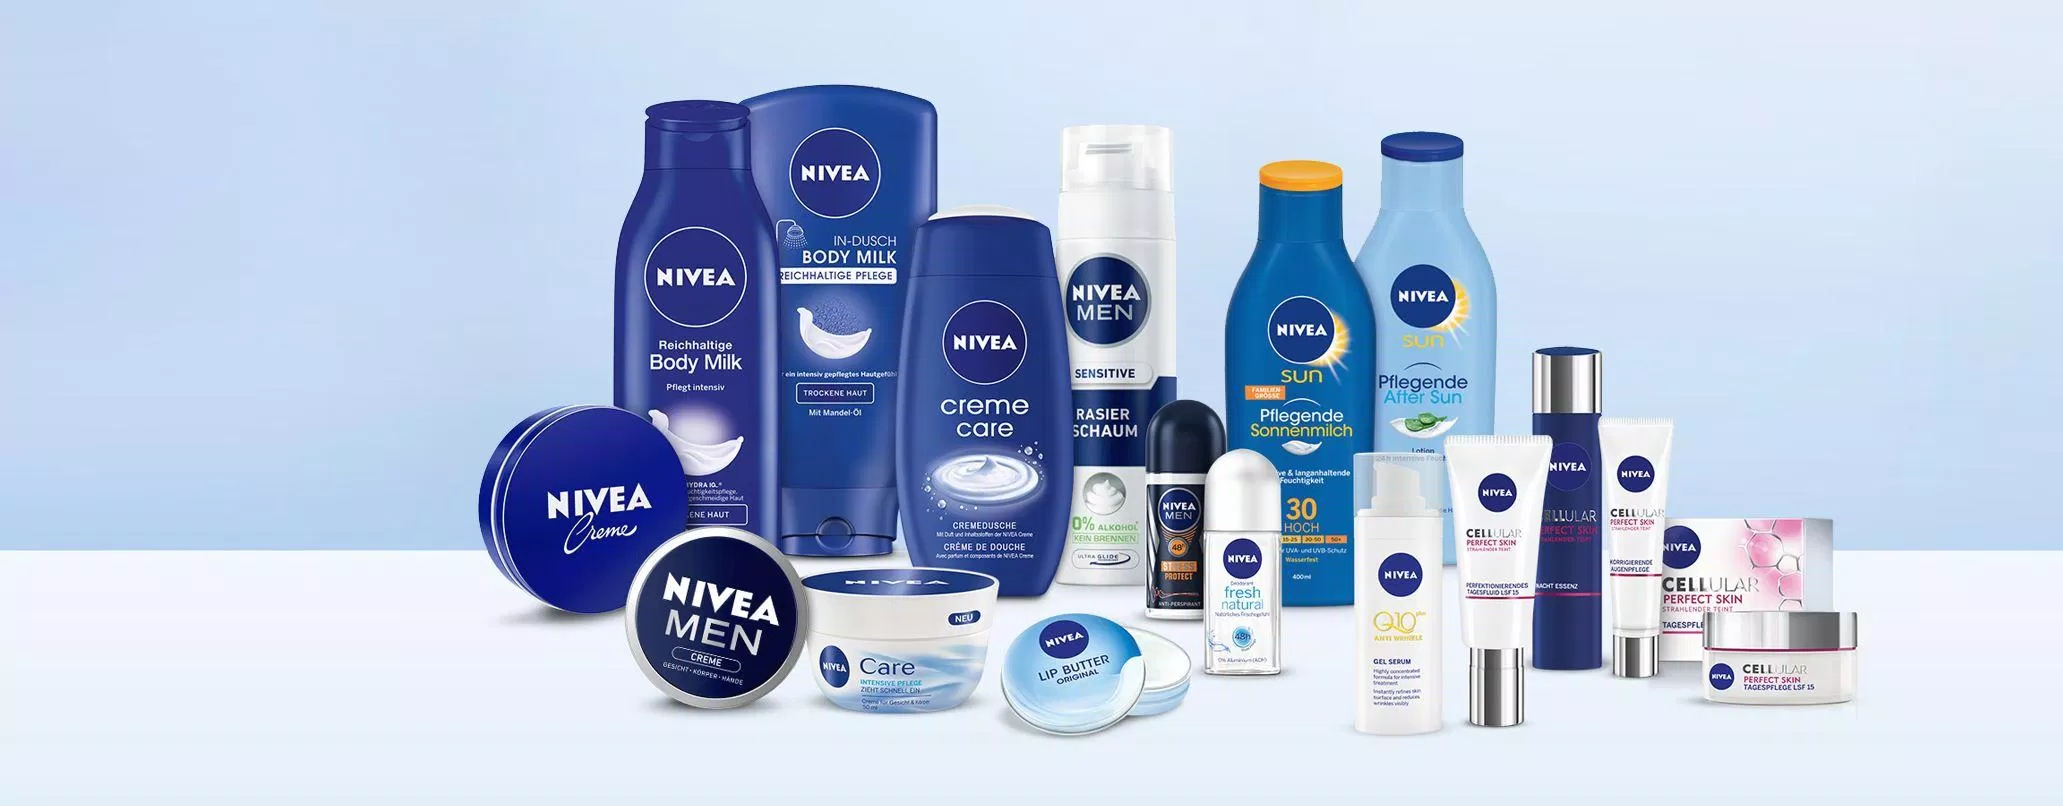 Nivea là thương hiệu mỹ phẩm toàn cầu nổi tiếng và lâu đời. (Nguồn: Internet.)